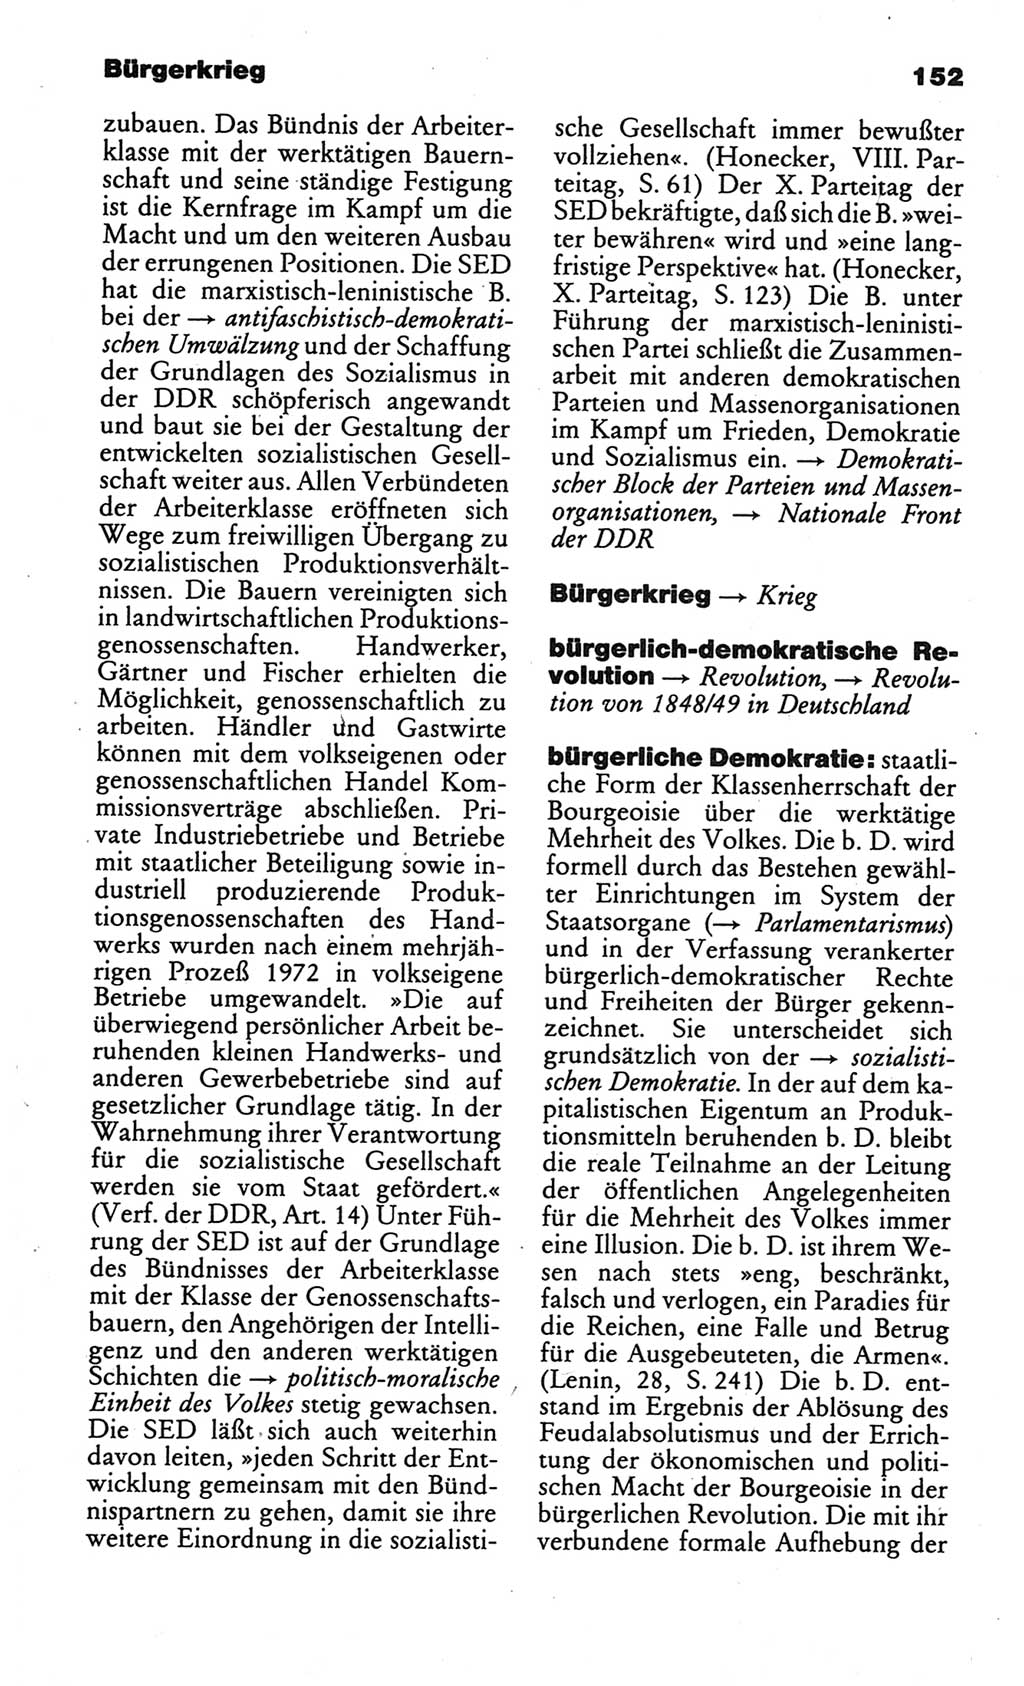 Kleines politisches Wörterbuch [Deutsche Demokratische Republik (DDR)] 1986, Seite 152 (Kl. pol. Wb. DDR 1986, S. 152)